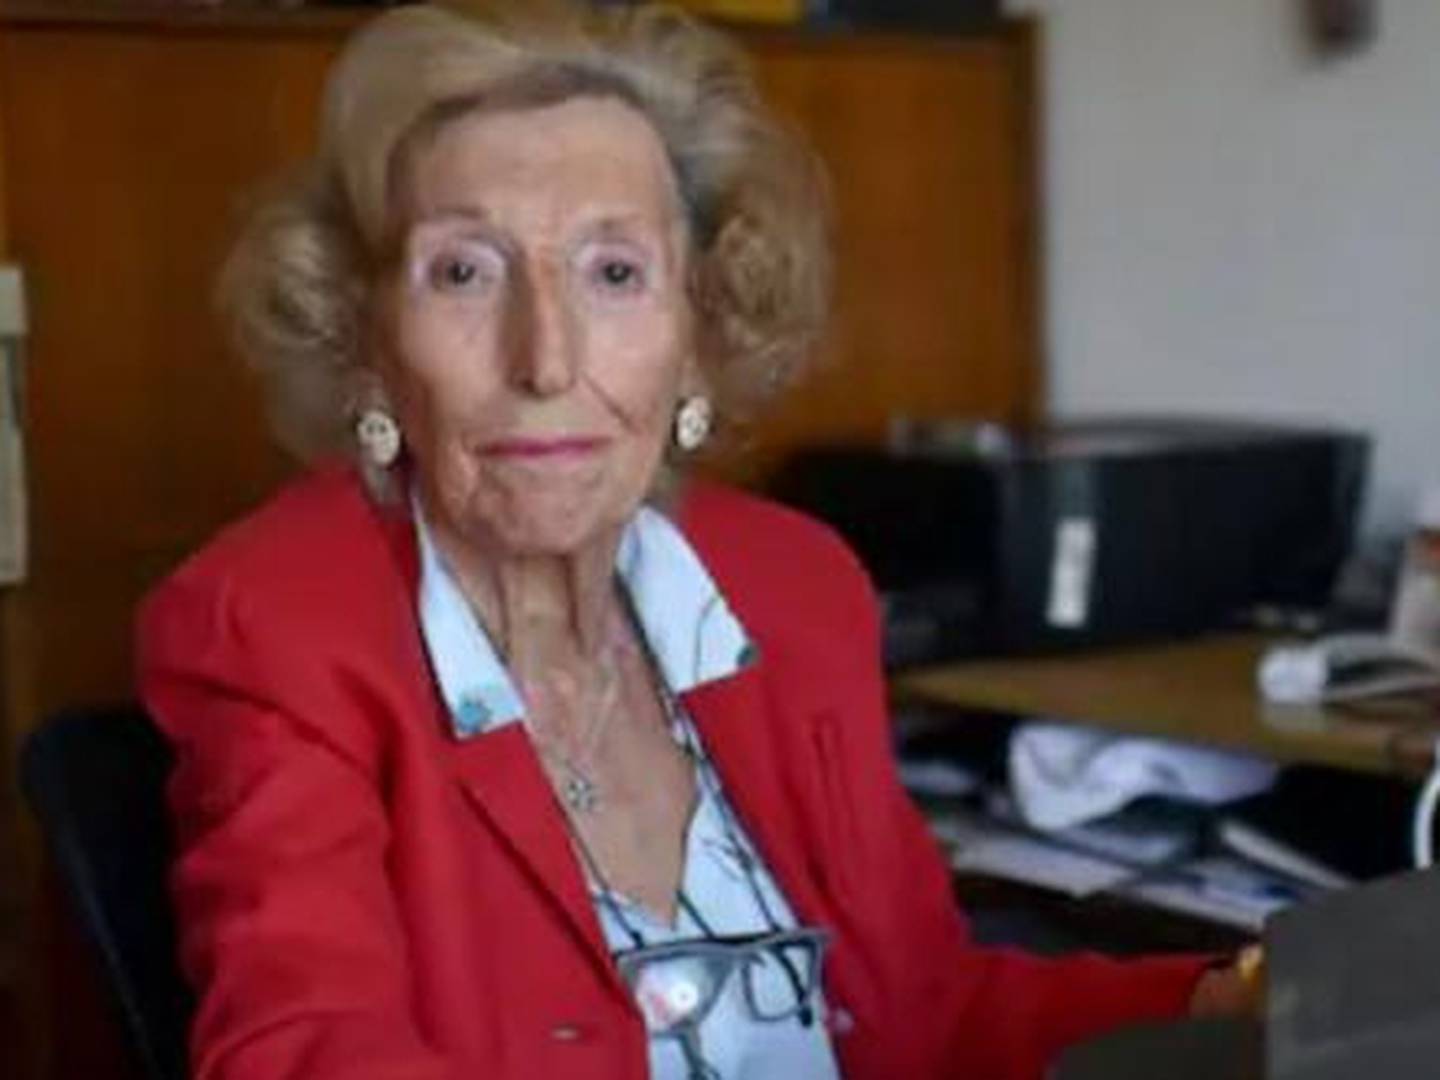 Alcira Calvo de Ramírez tiene 89 años y aún trabaja. Los mayores de 60 años saben hoy que, por los avances de la medicina y los hábitos saludables, luego de la jubilación pueden tener otros 20 a 30 años activos; el desafío social y cultural